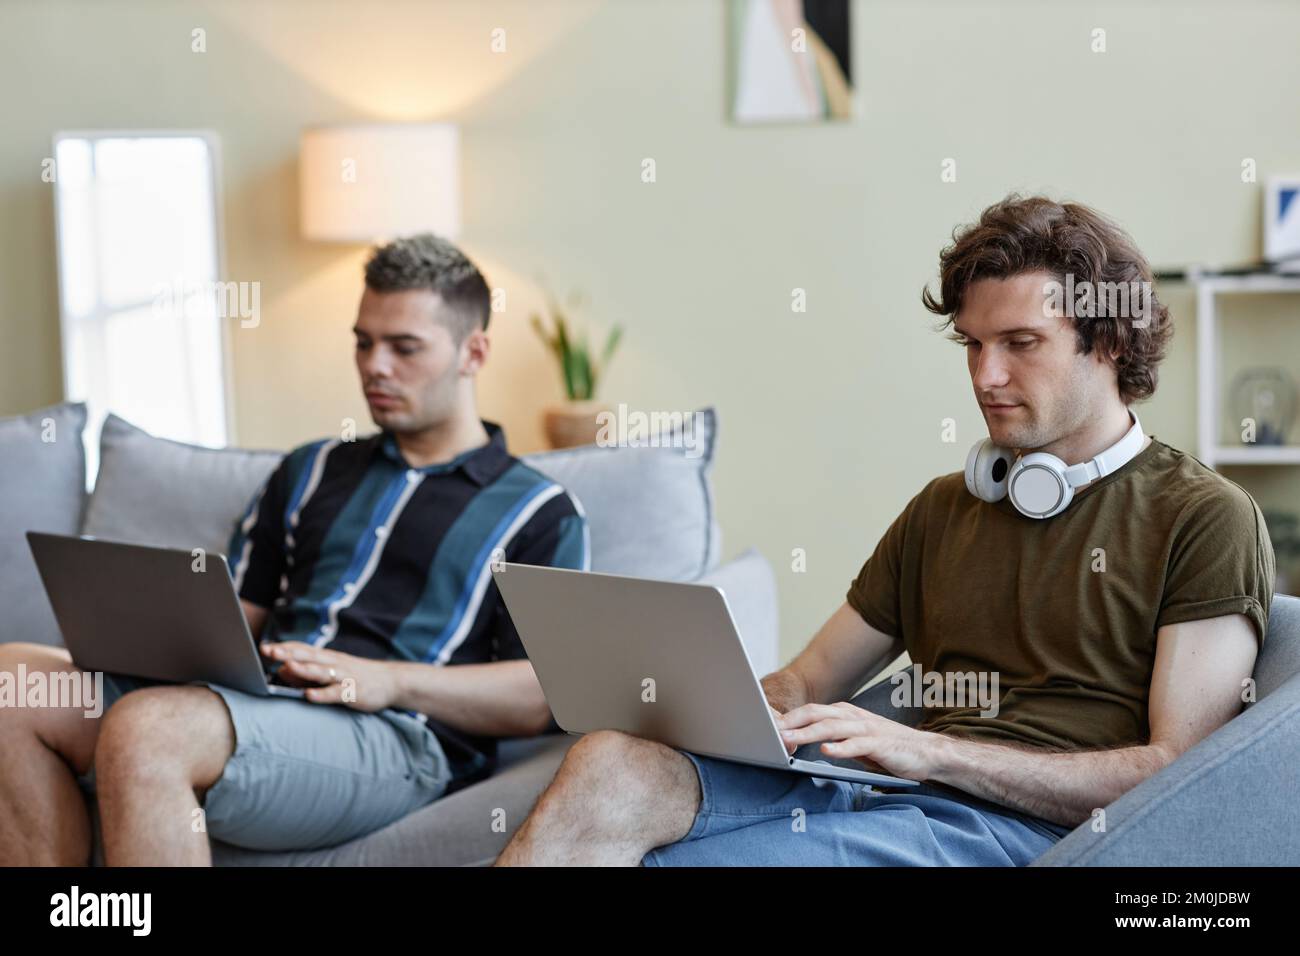 Portrait de deux jeunes hommes vivant ensemble et utilisant des ordinateurs travaillant à domicile Banque D'Images